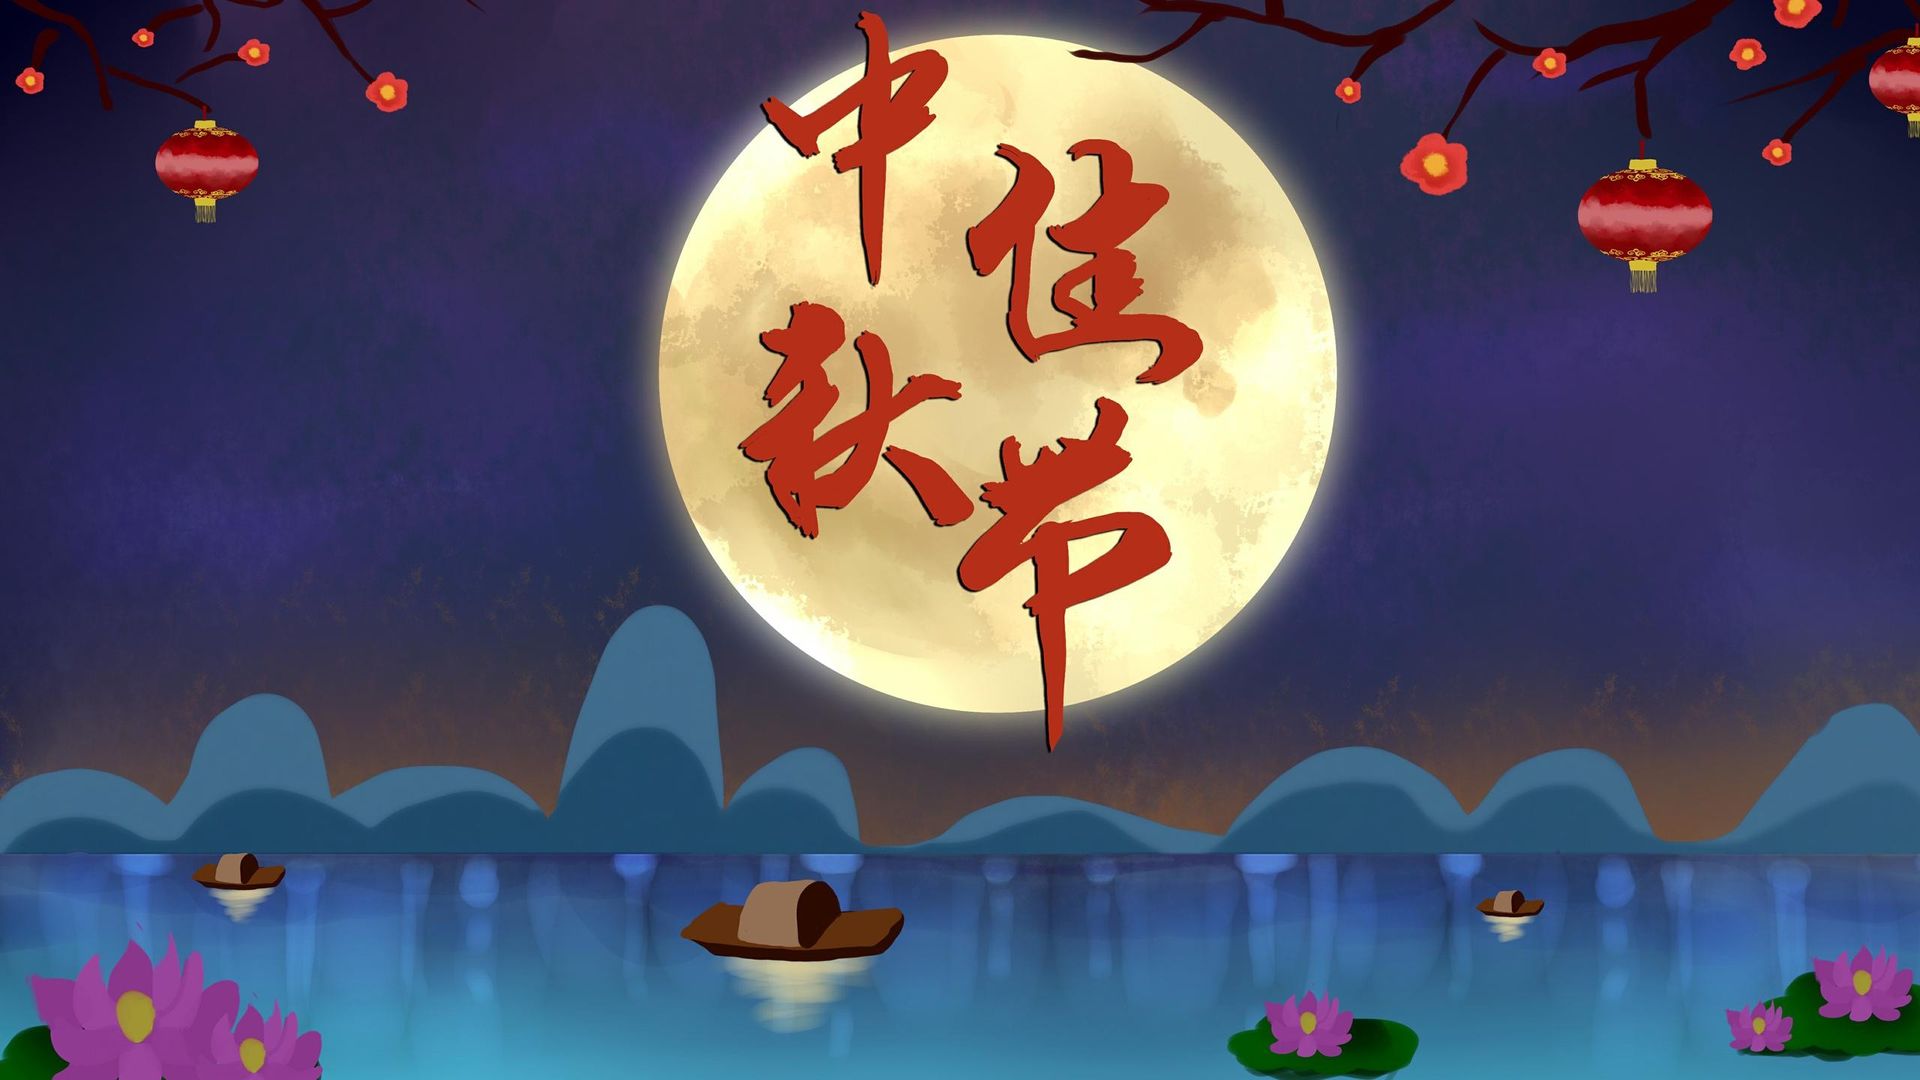 传统节日中秋将至祝你月圆人圆事事圆满